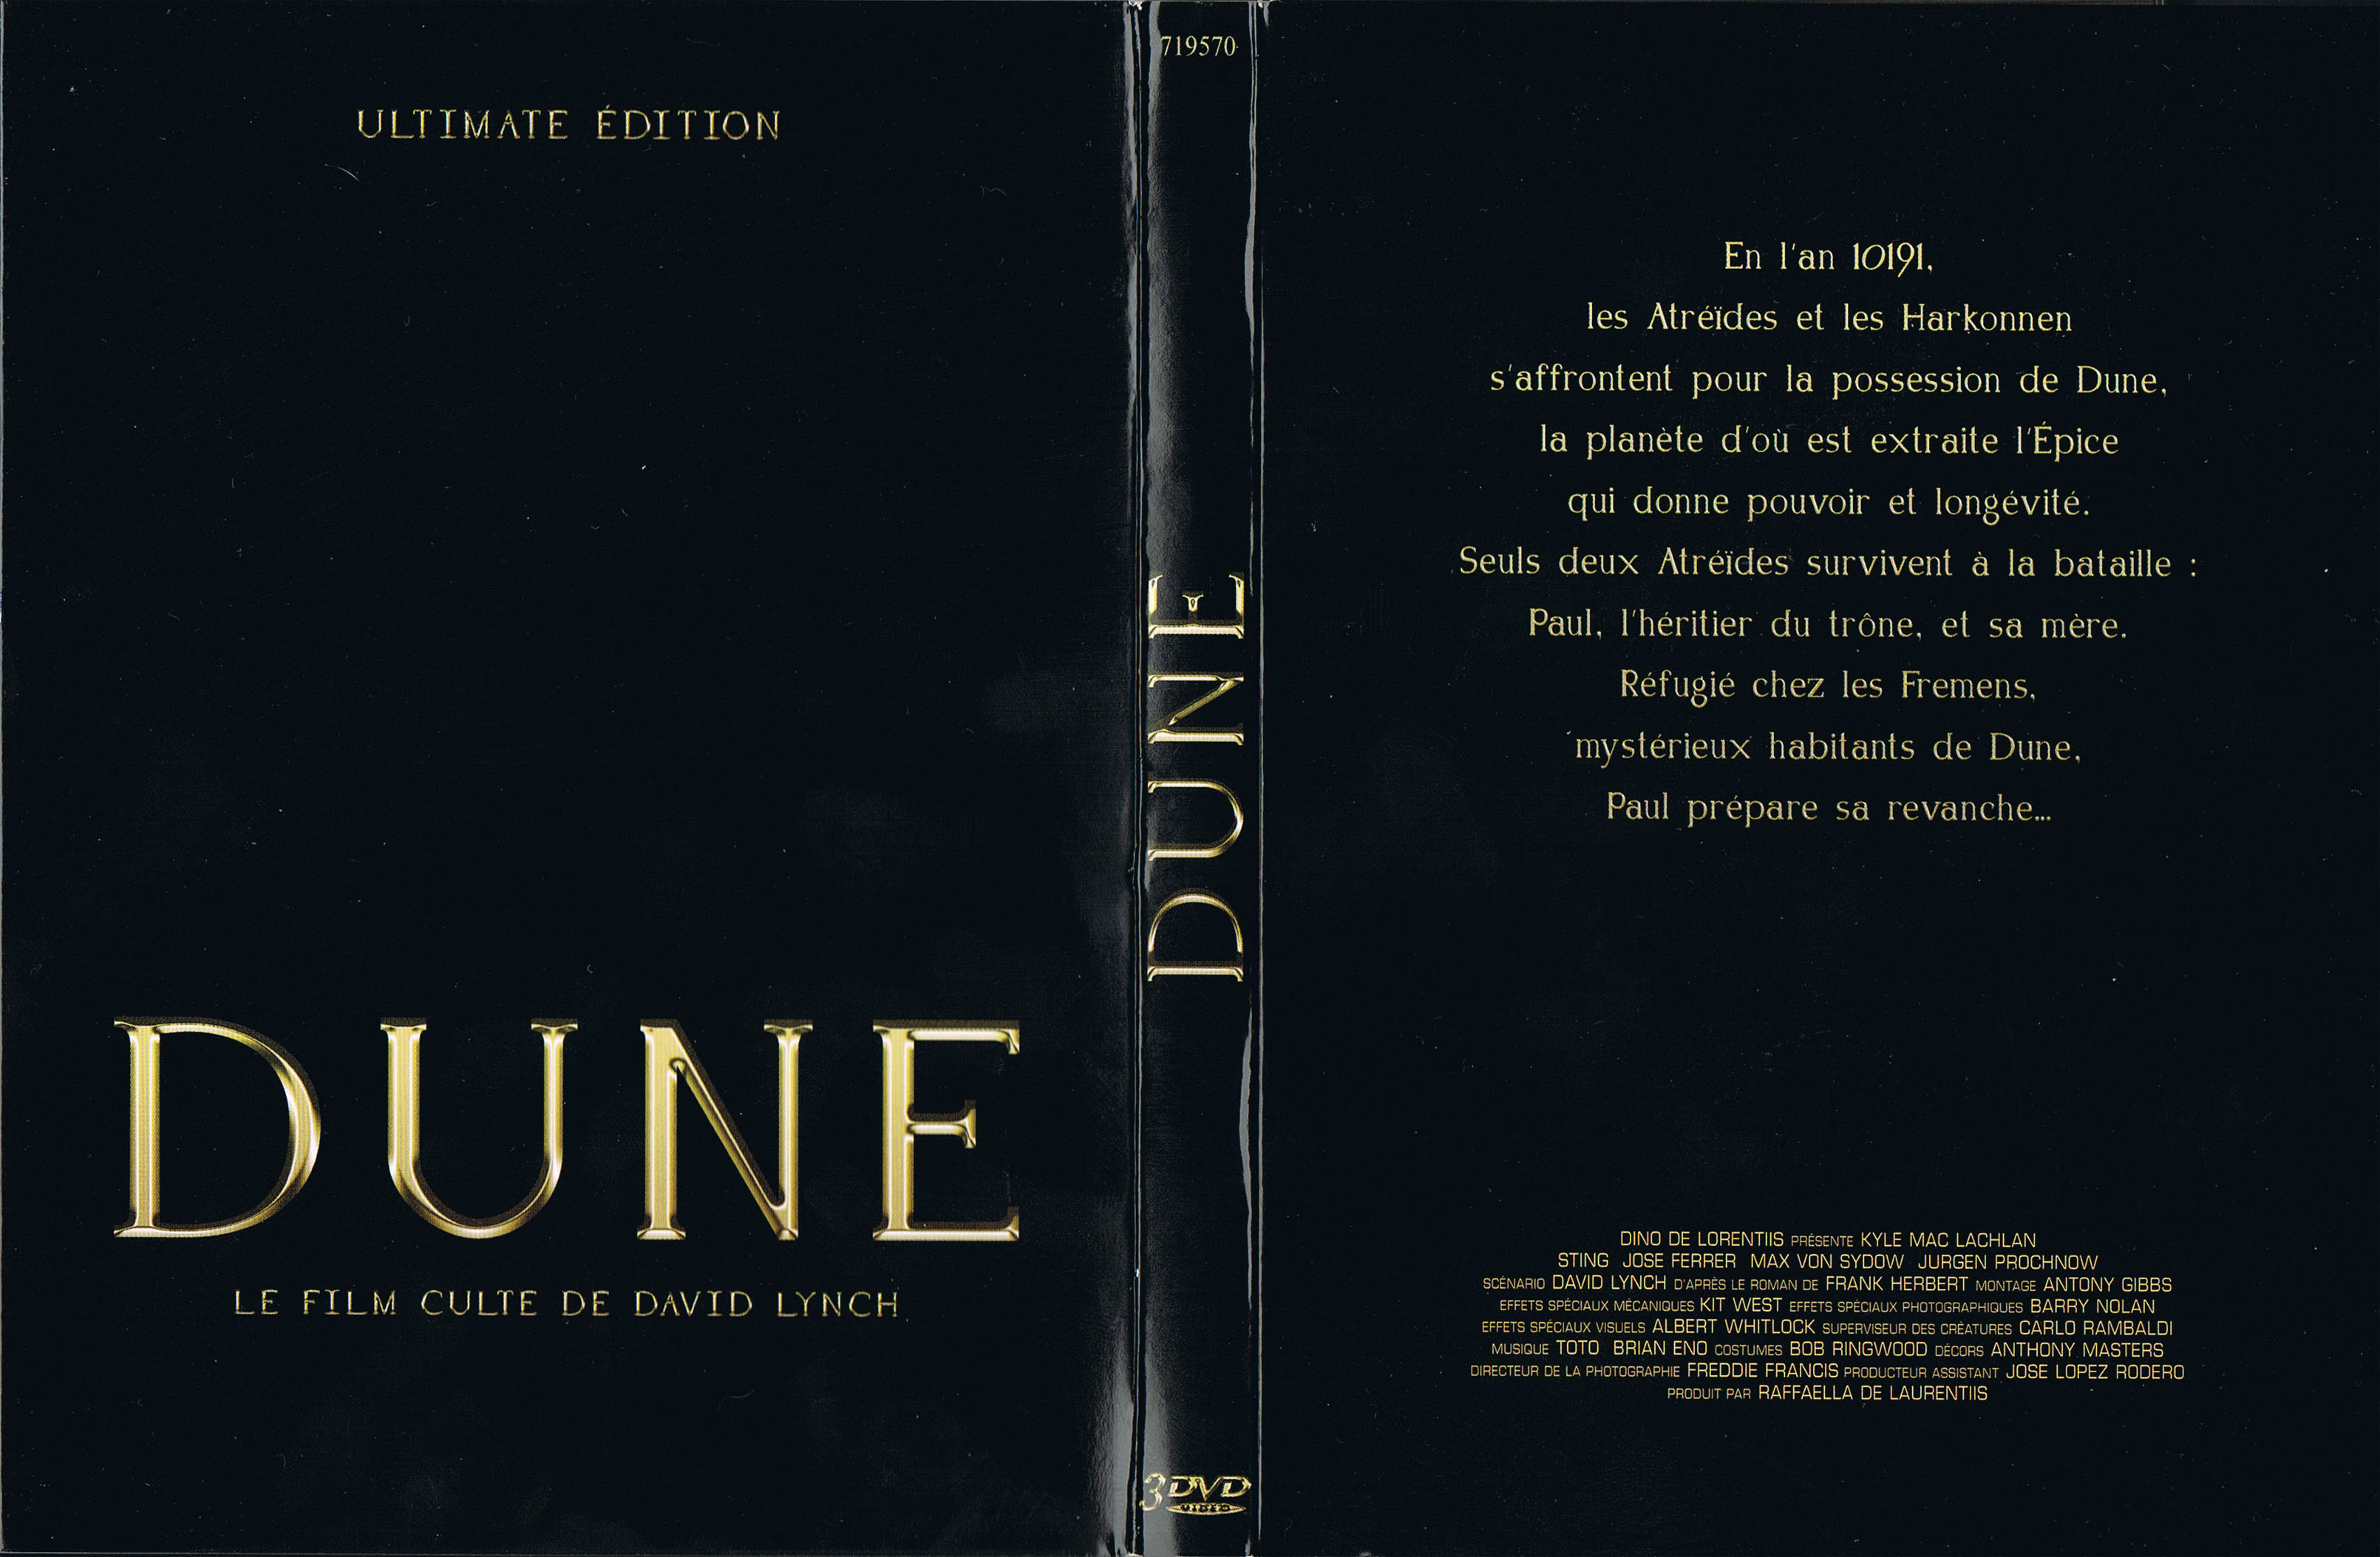 Jaquette DVD Dune v2